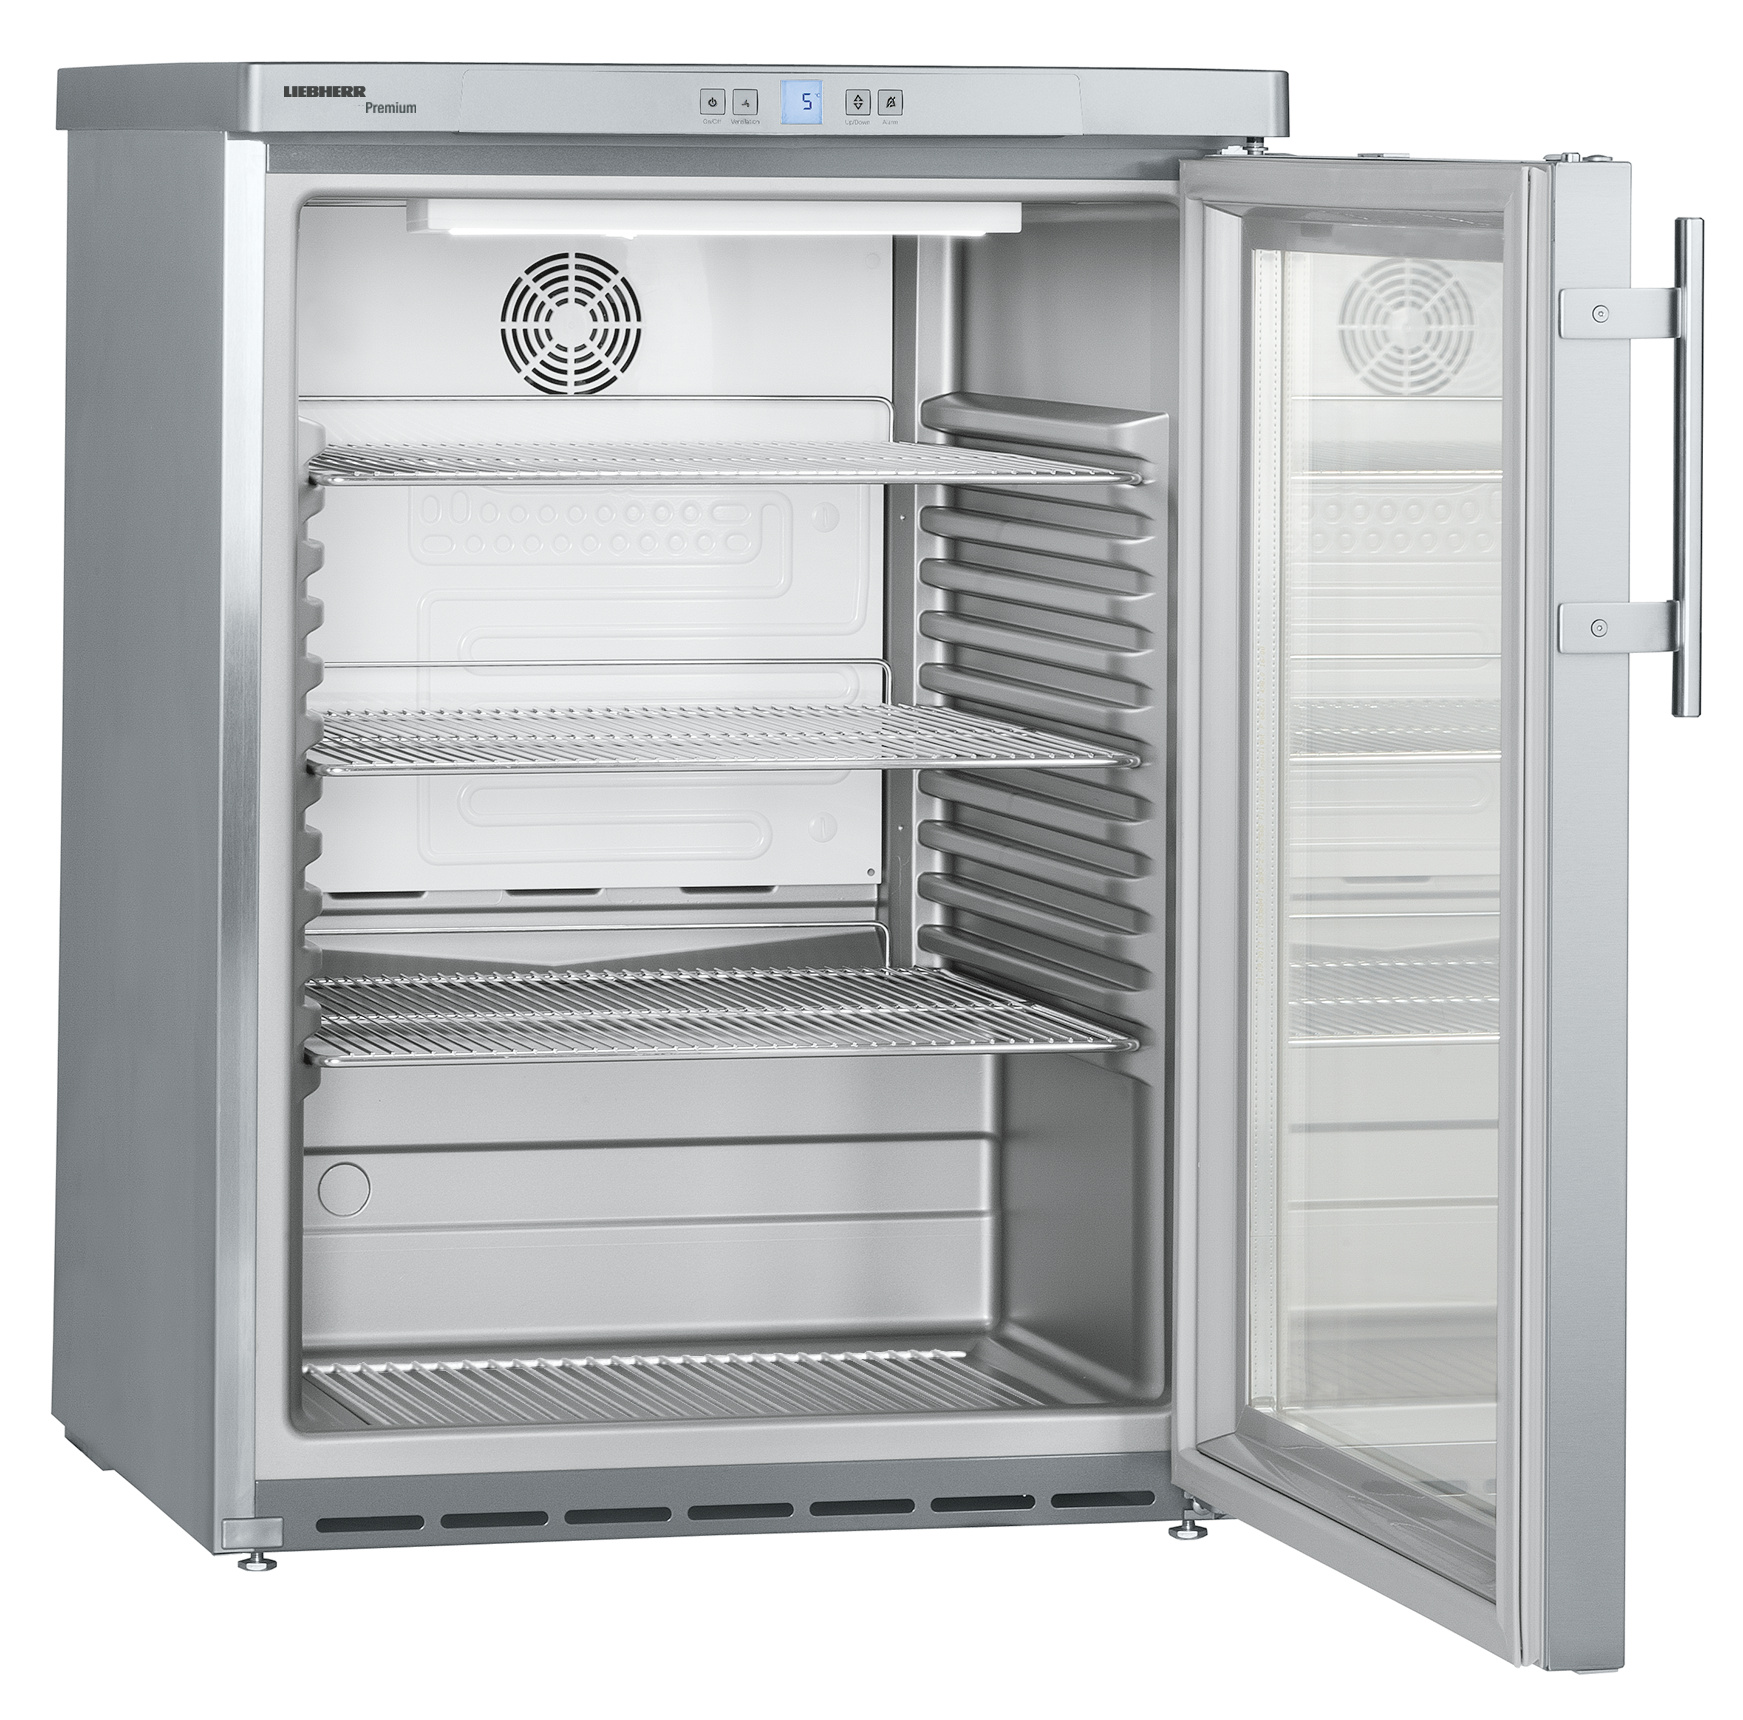 141 literes pult alá helyezhető hűtőszekrény, ventilációs hűtéssel, üvegajtós, rozsdamentes